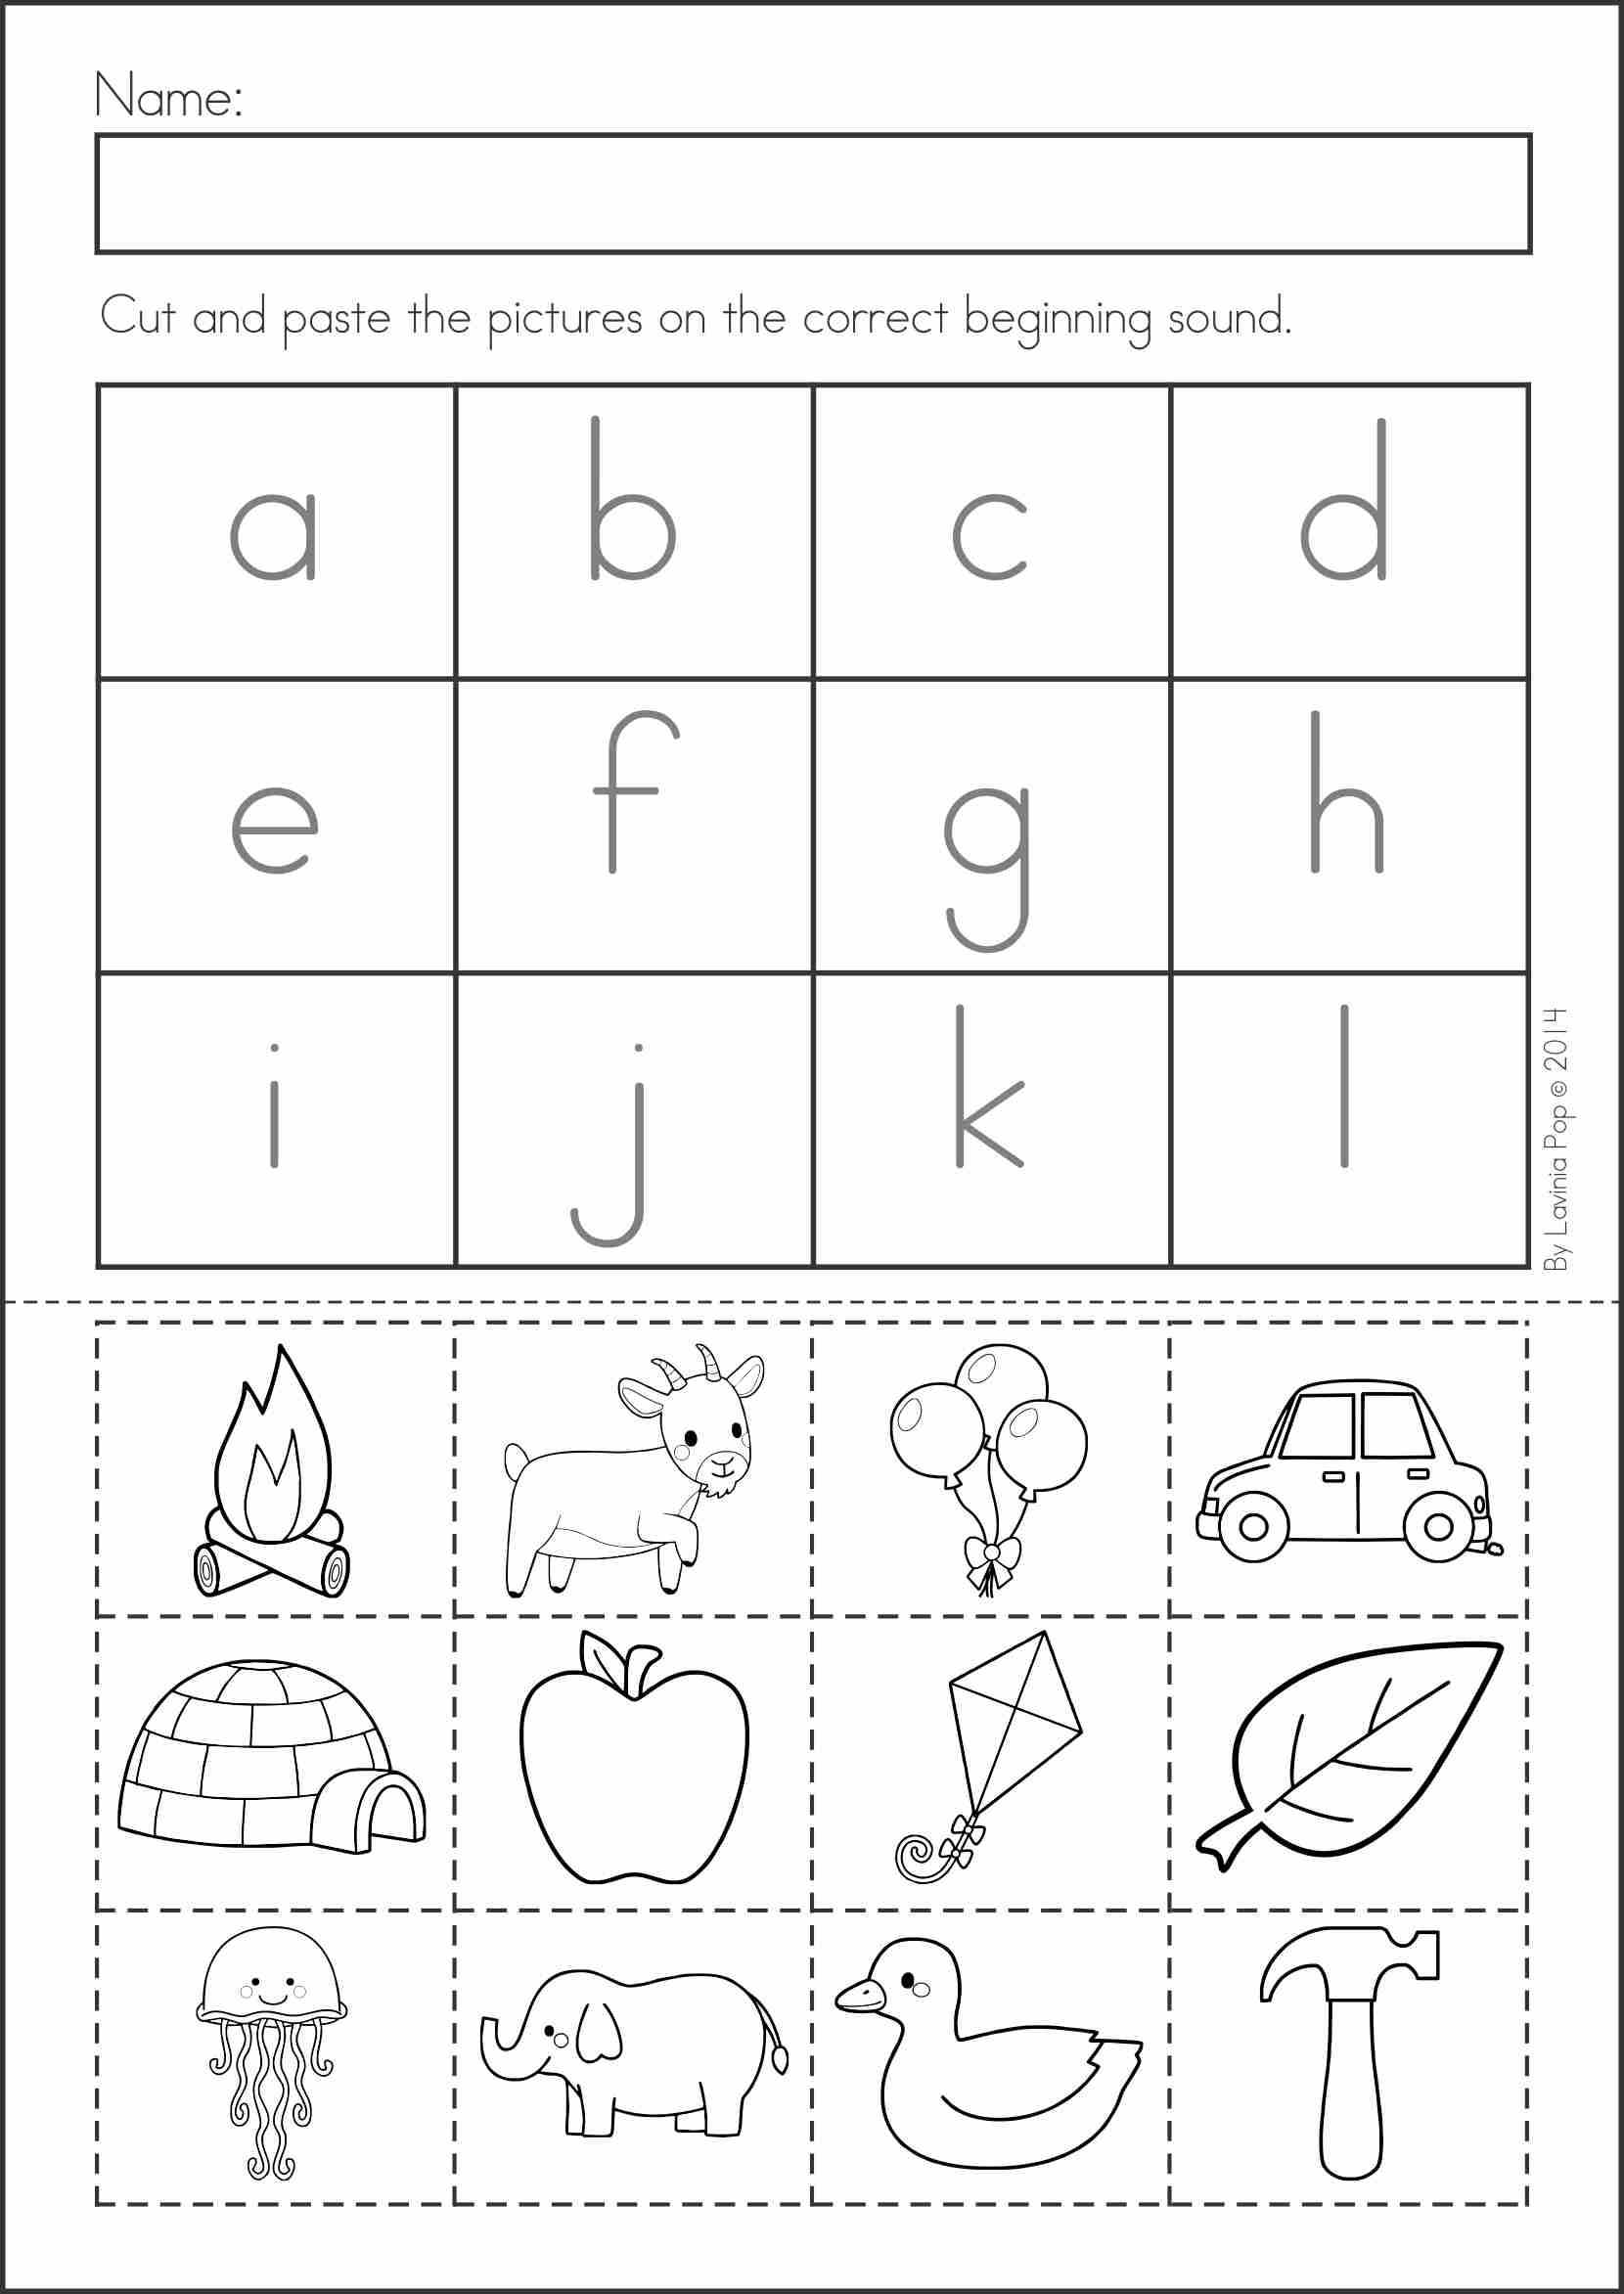 Cut and Paste Worksheets for Kindergarten together with Letter J Cut and Paste Worksheets the Best Worksheets Image